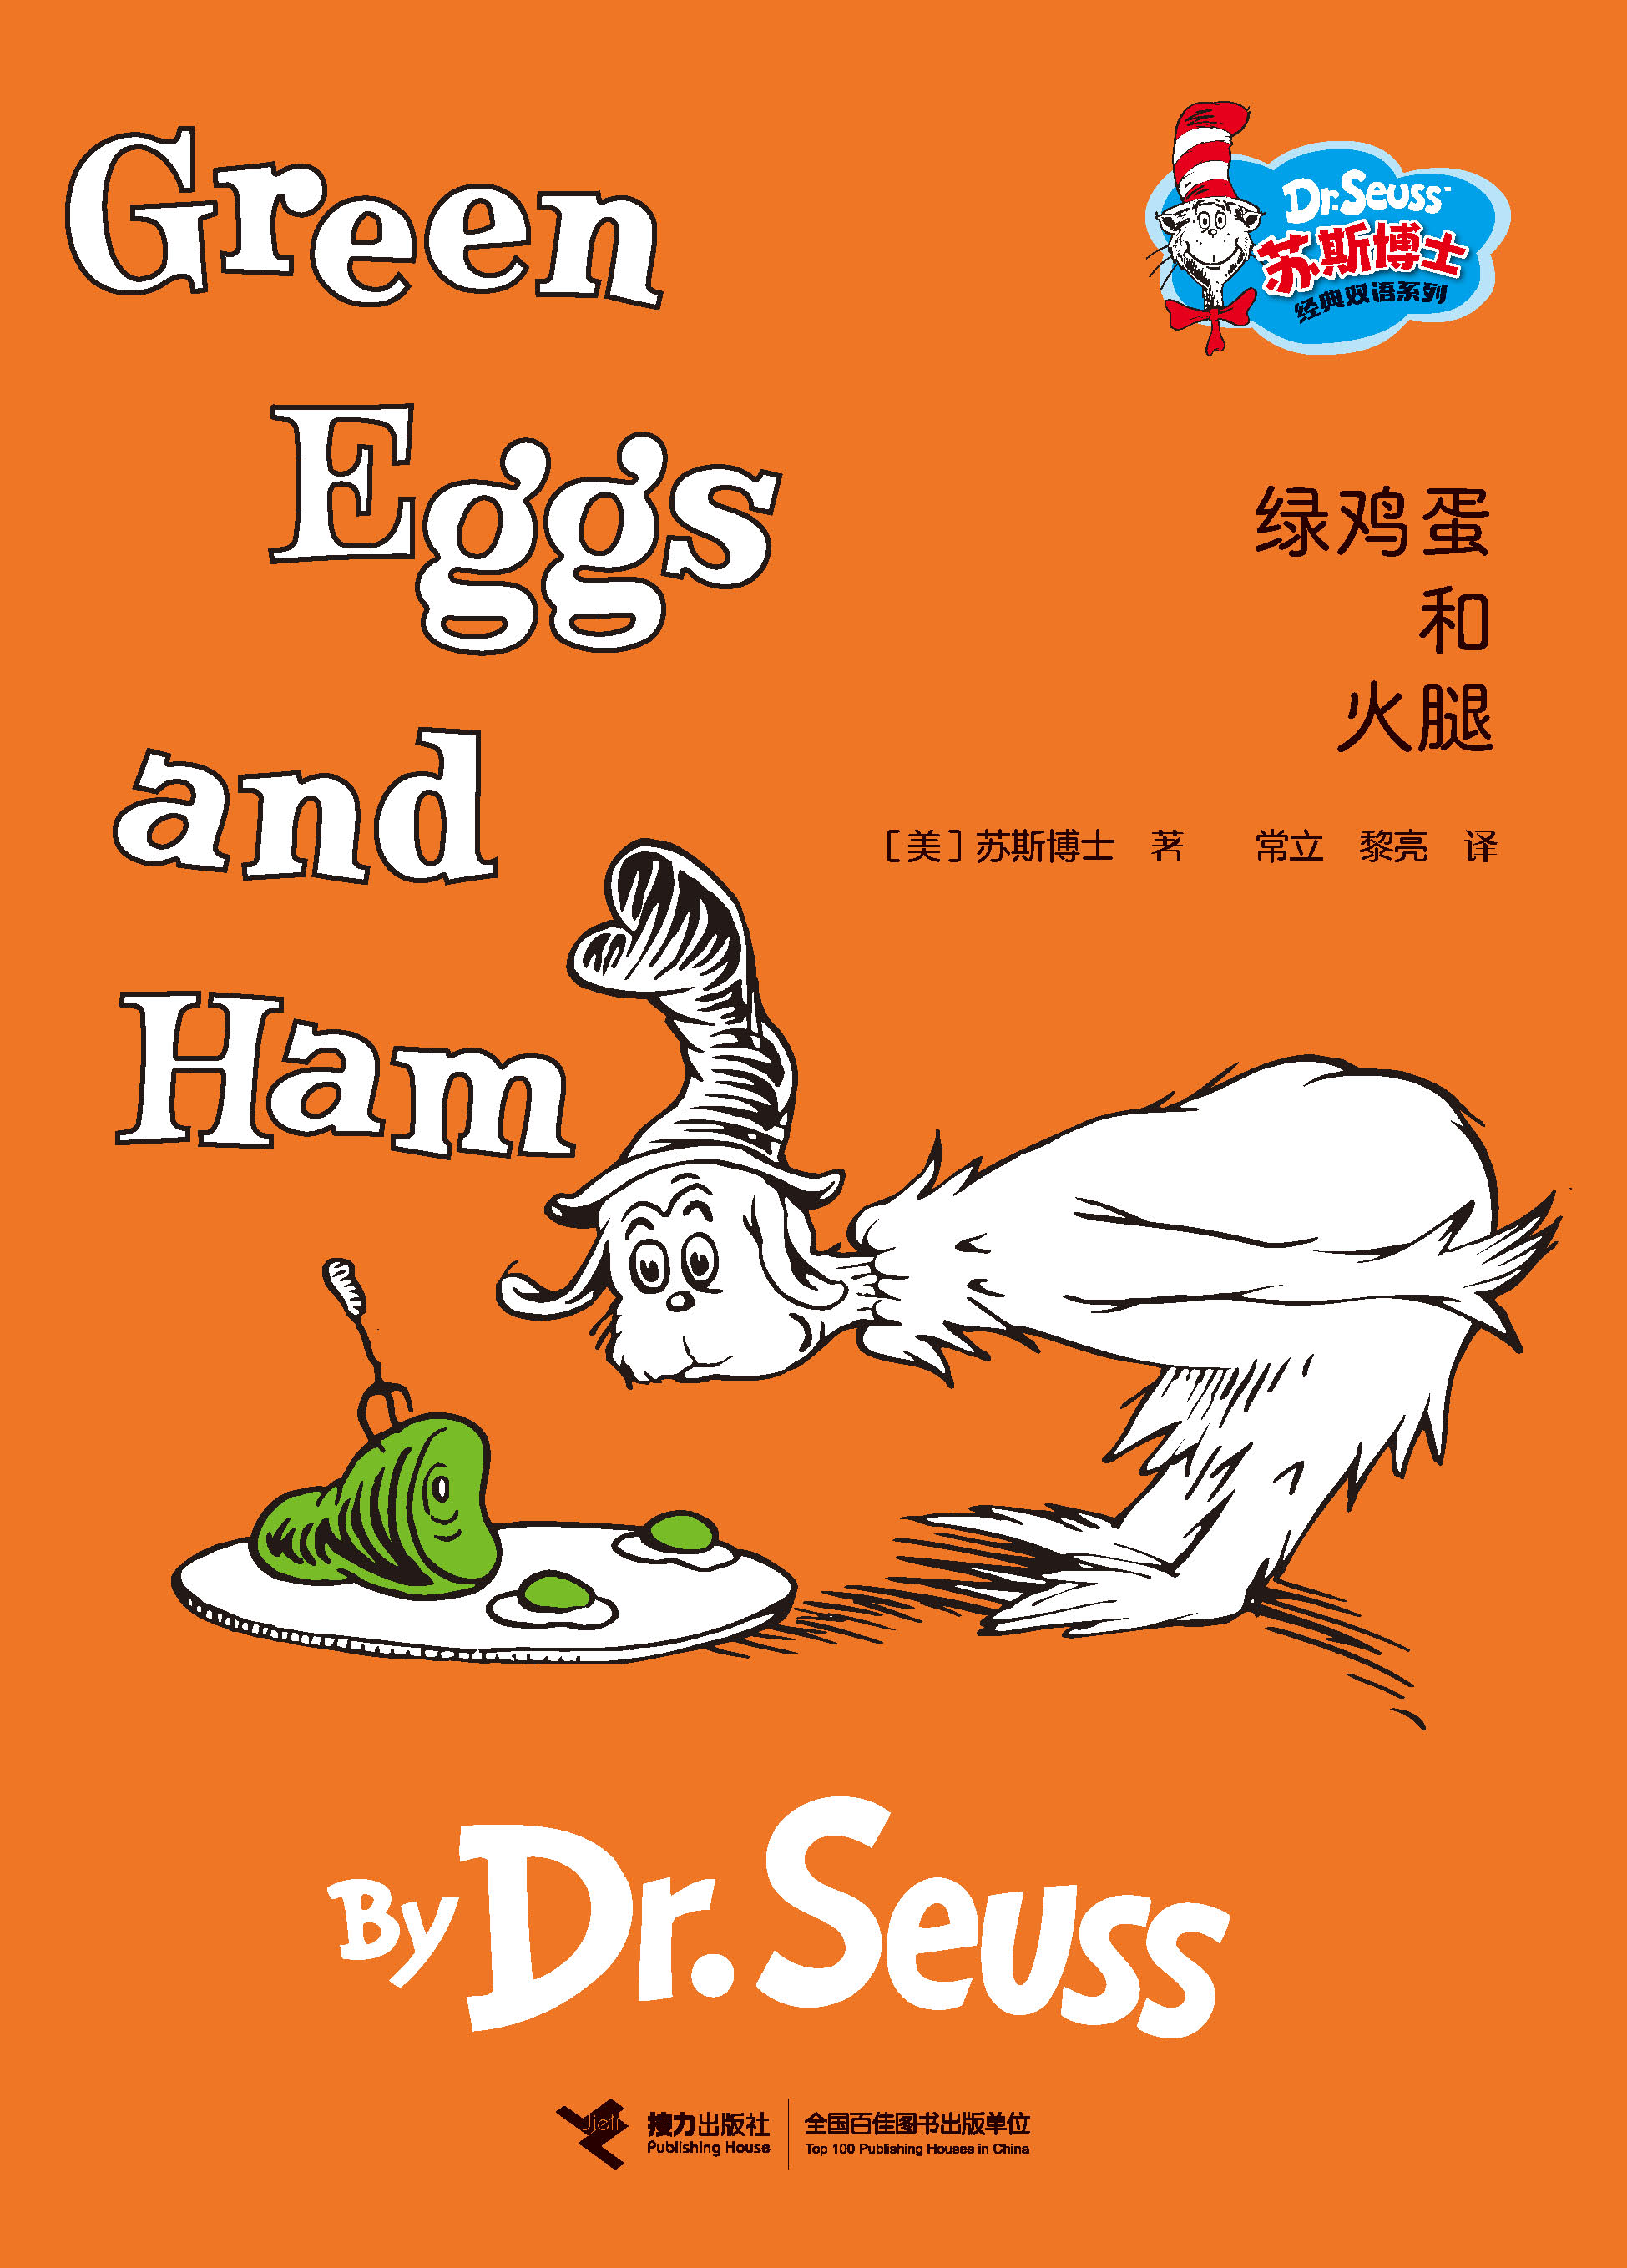 苏斯博士经典双语系列:绿鸡蛋和火腿：汉英对照